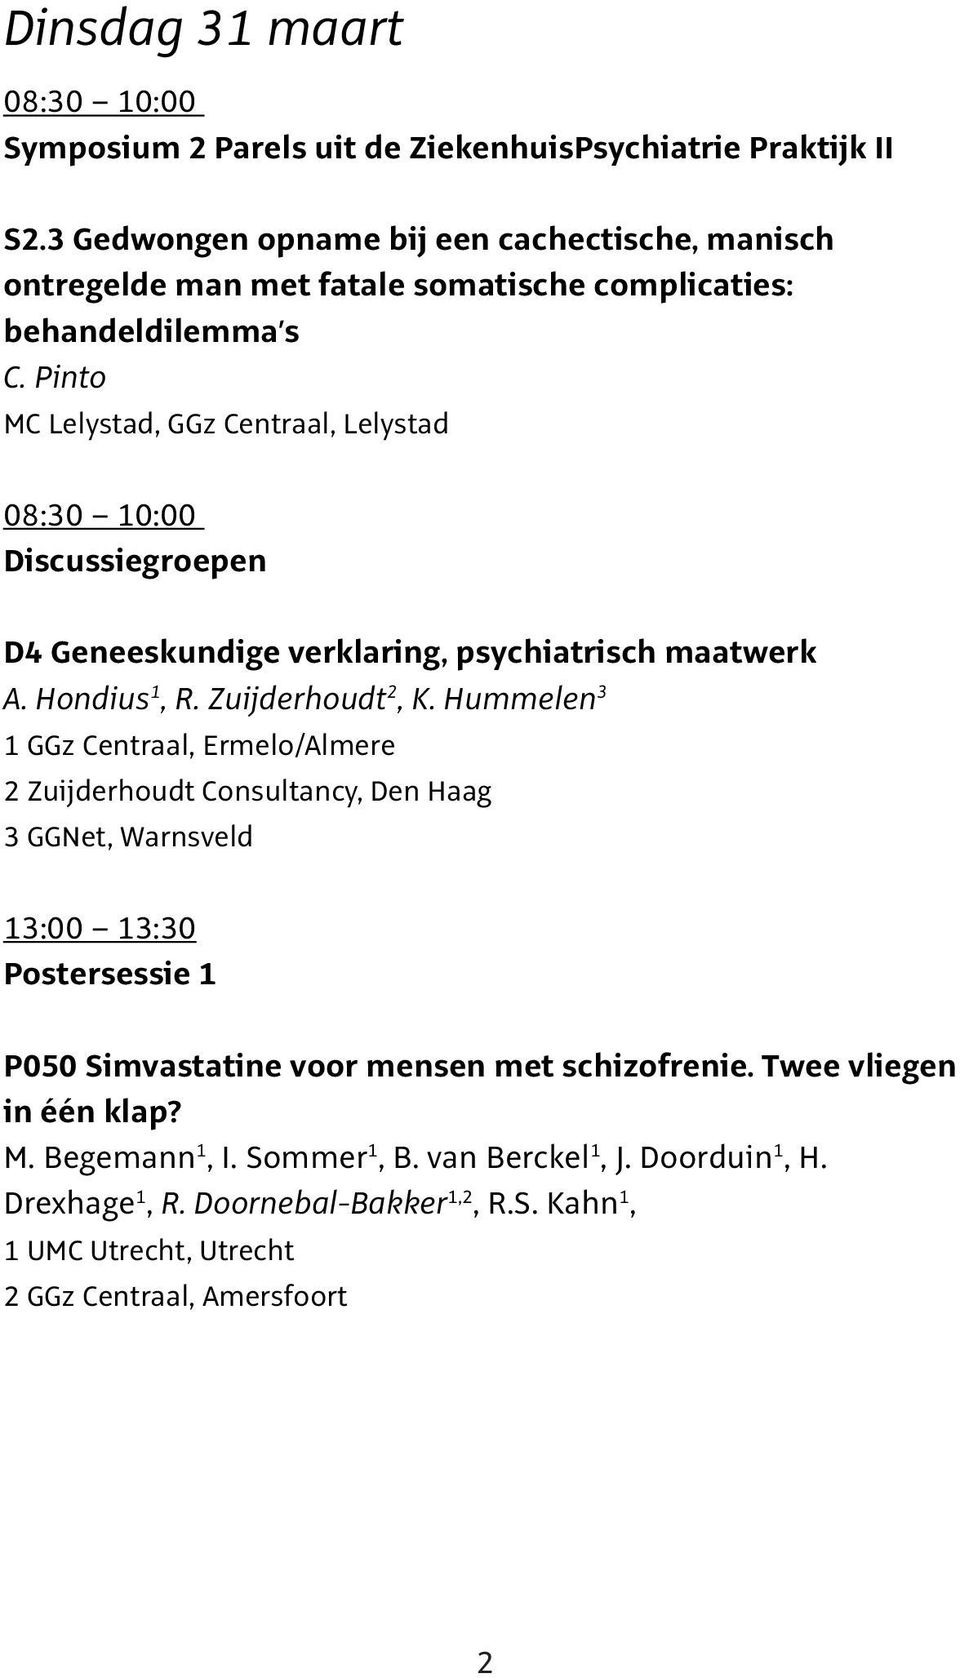 Pinto MC Lelystad, GGz Centraal, Lelystad 08:30 10:00 Discussiegroepen D4 Geneeskundige verklaring, psychiatrisch maatwerk A. Hondius 1, R. Zuijderhoudt 2, K.